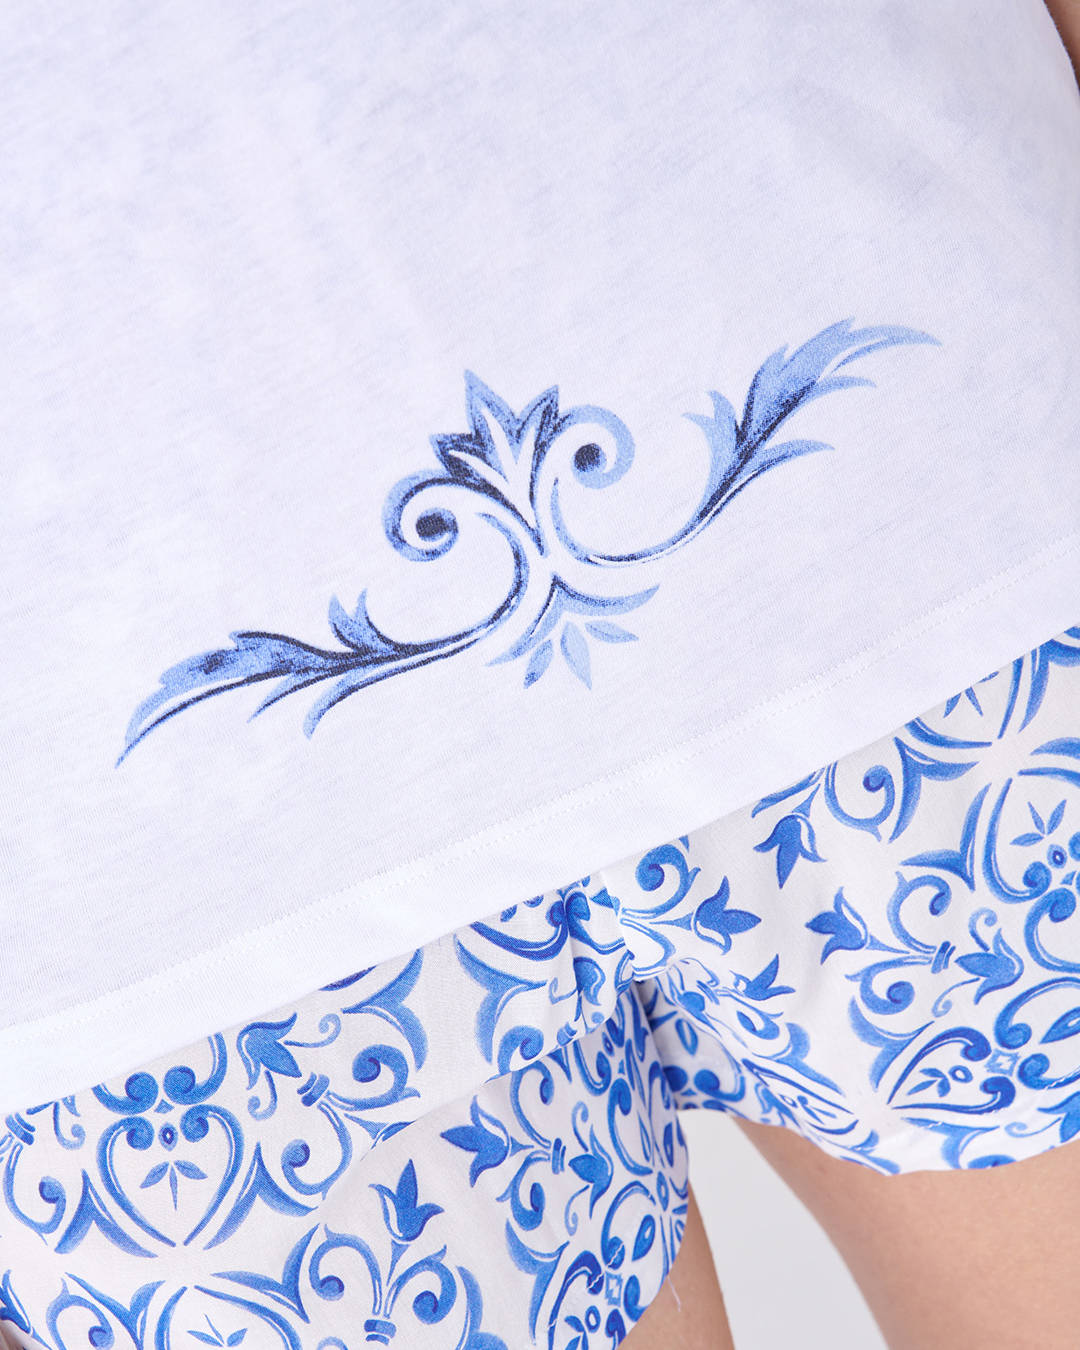 Dettaglio disegno sulla maglietta del pigiama a manica corta da donna fantasia maioliche